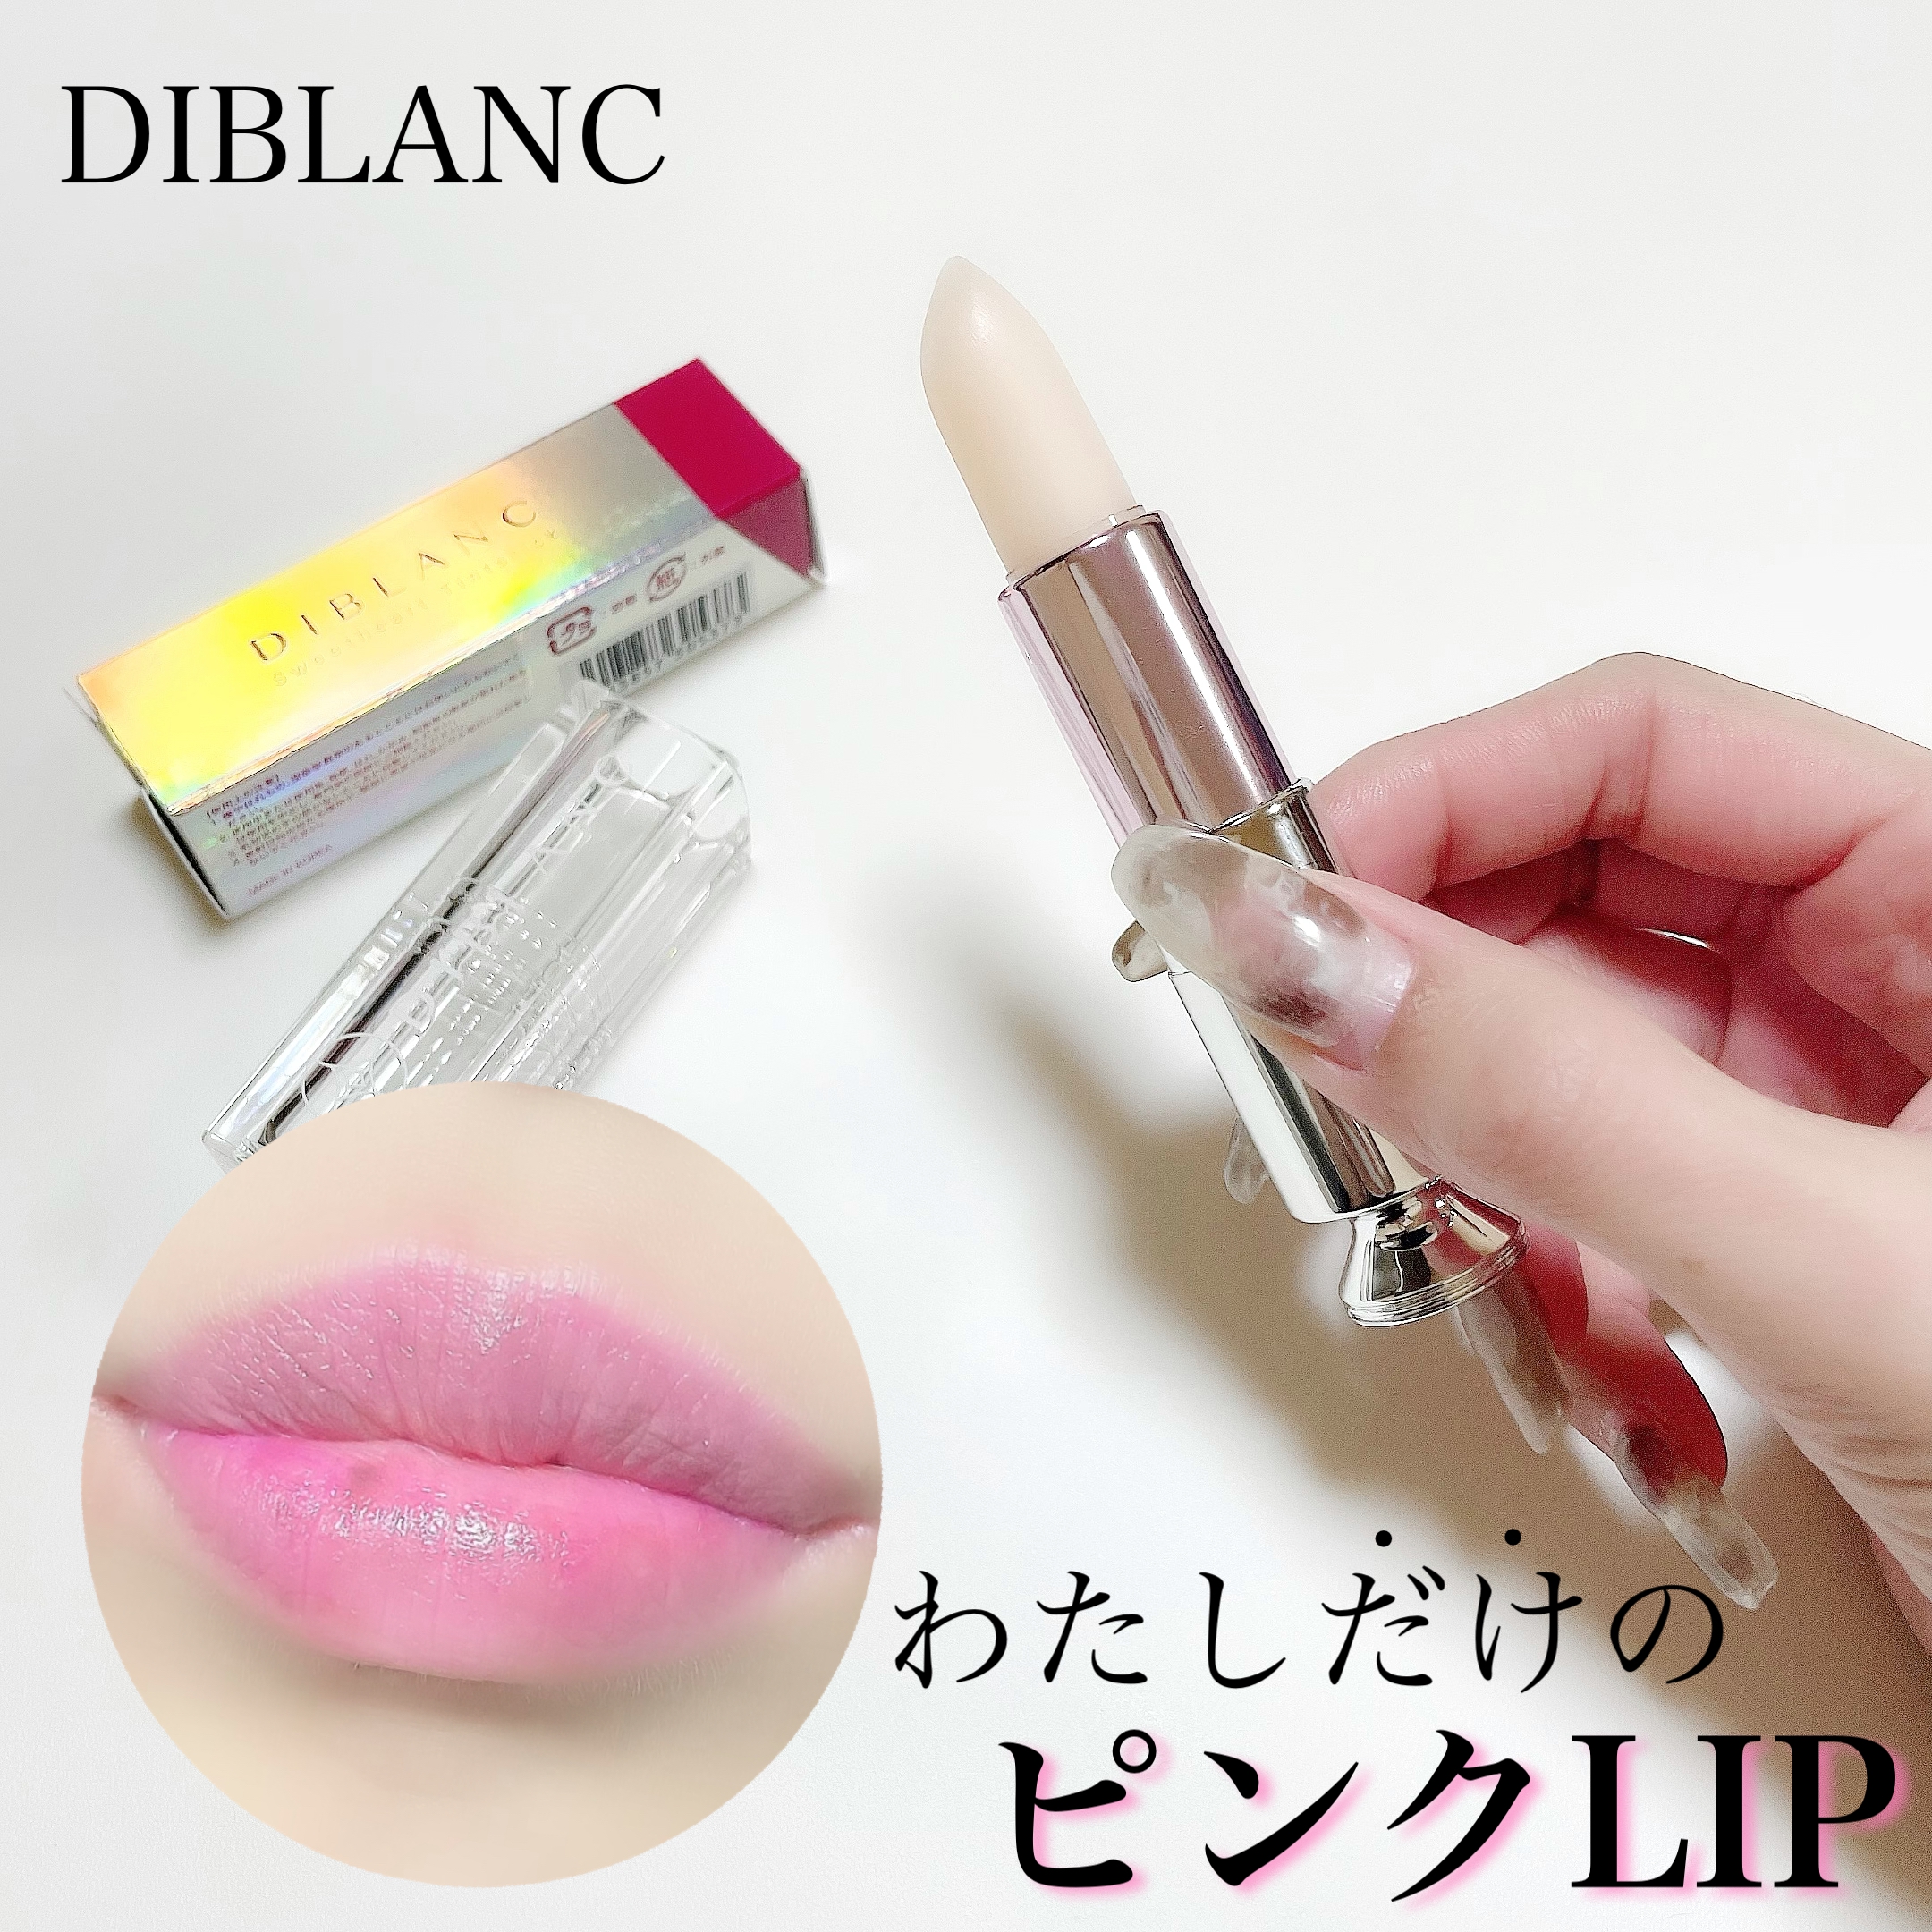 DIBLANC(ディブラン) スイートハート ティントスティックの良い点・メリットに関するshiroさんの口コミ画像1